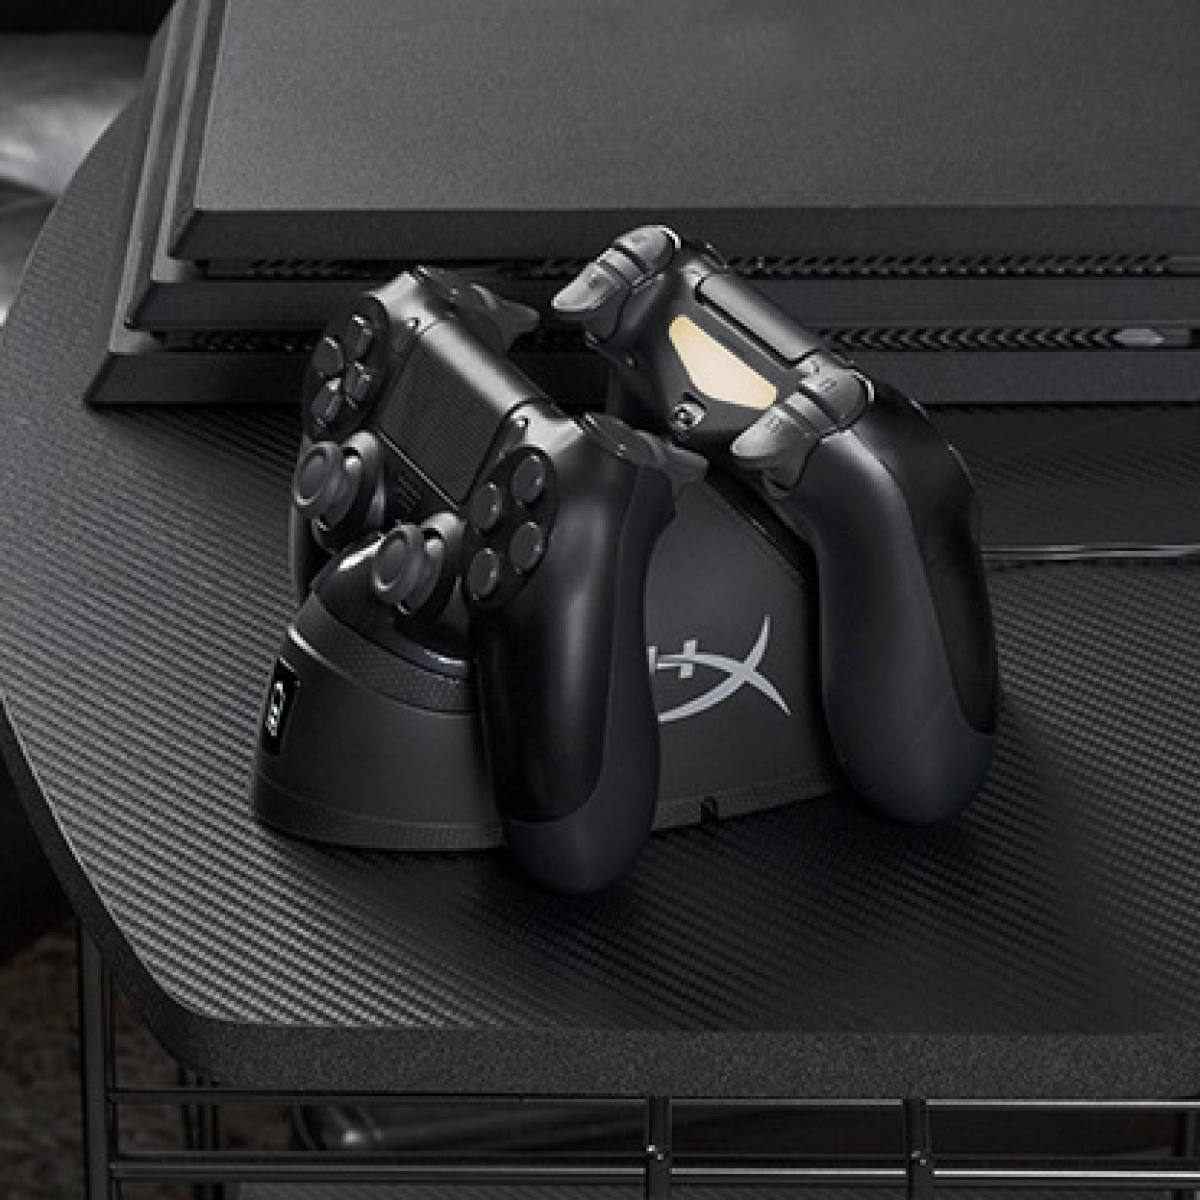 Trạm sạc tay cầm HyperX ChargePlay Duo cho PS4